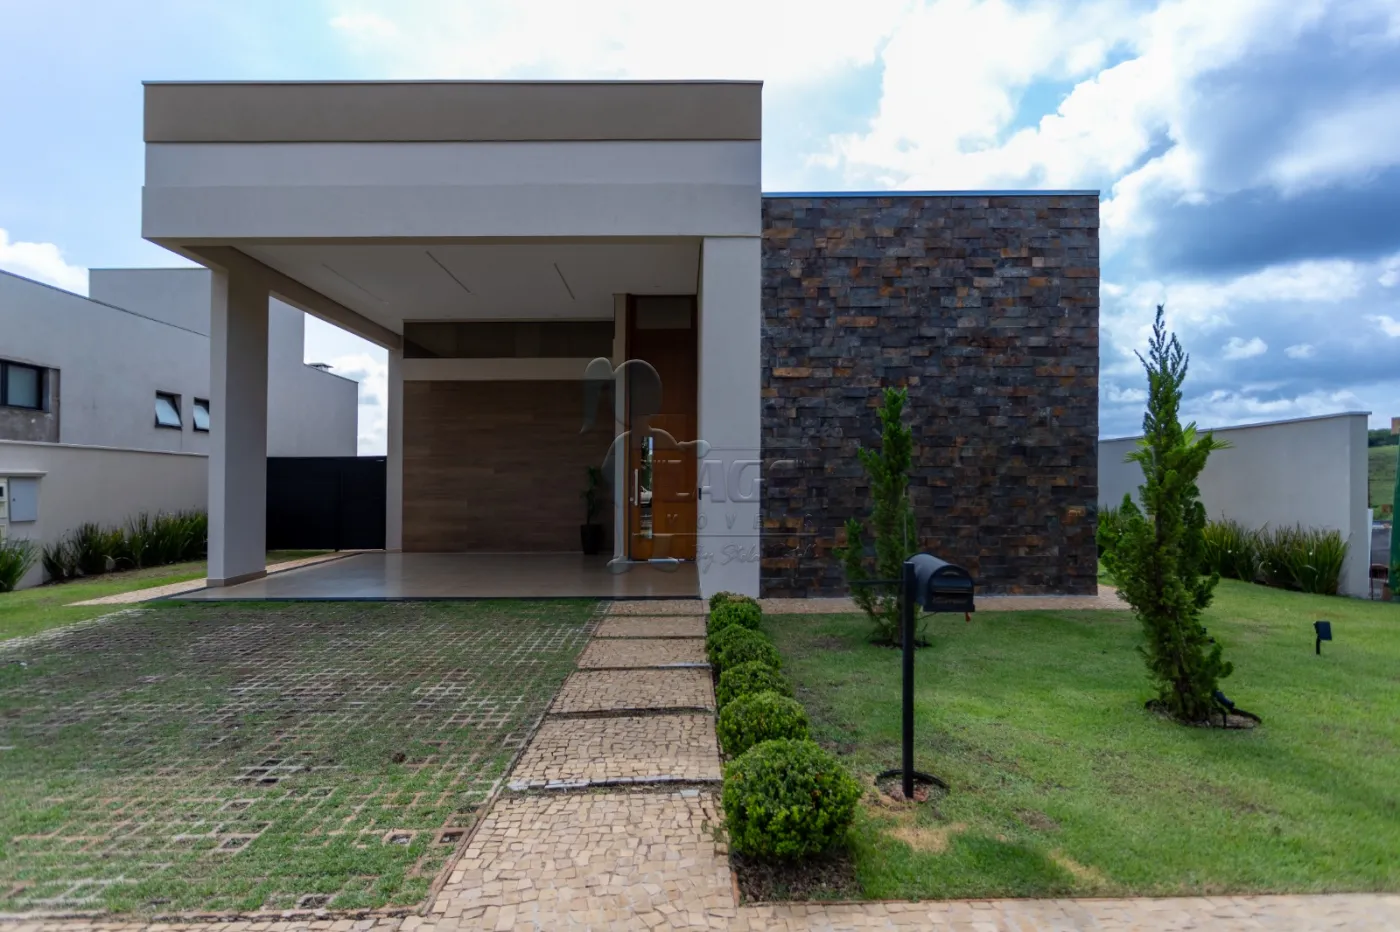 Comprar Casa condomínio / Padrão em Bonfim Paulista R$ 2.300.000,00 - Foto 2